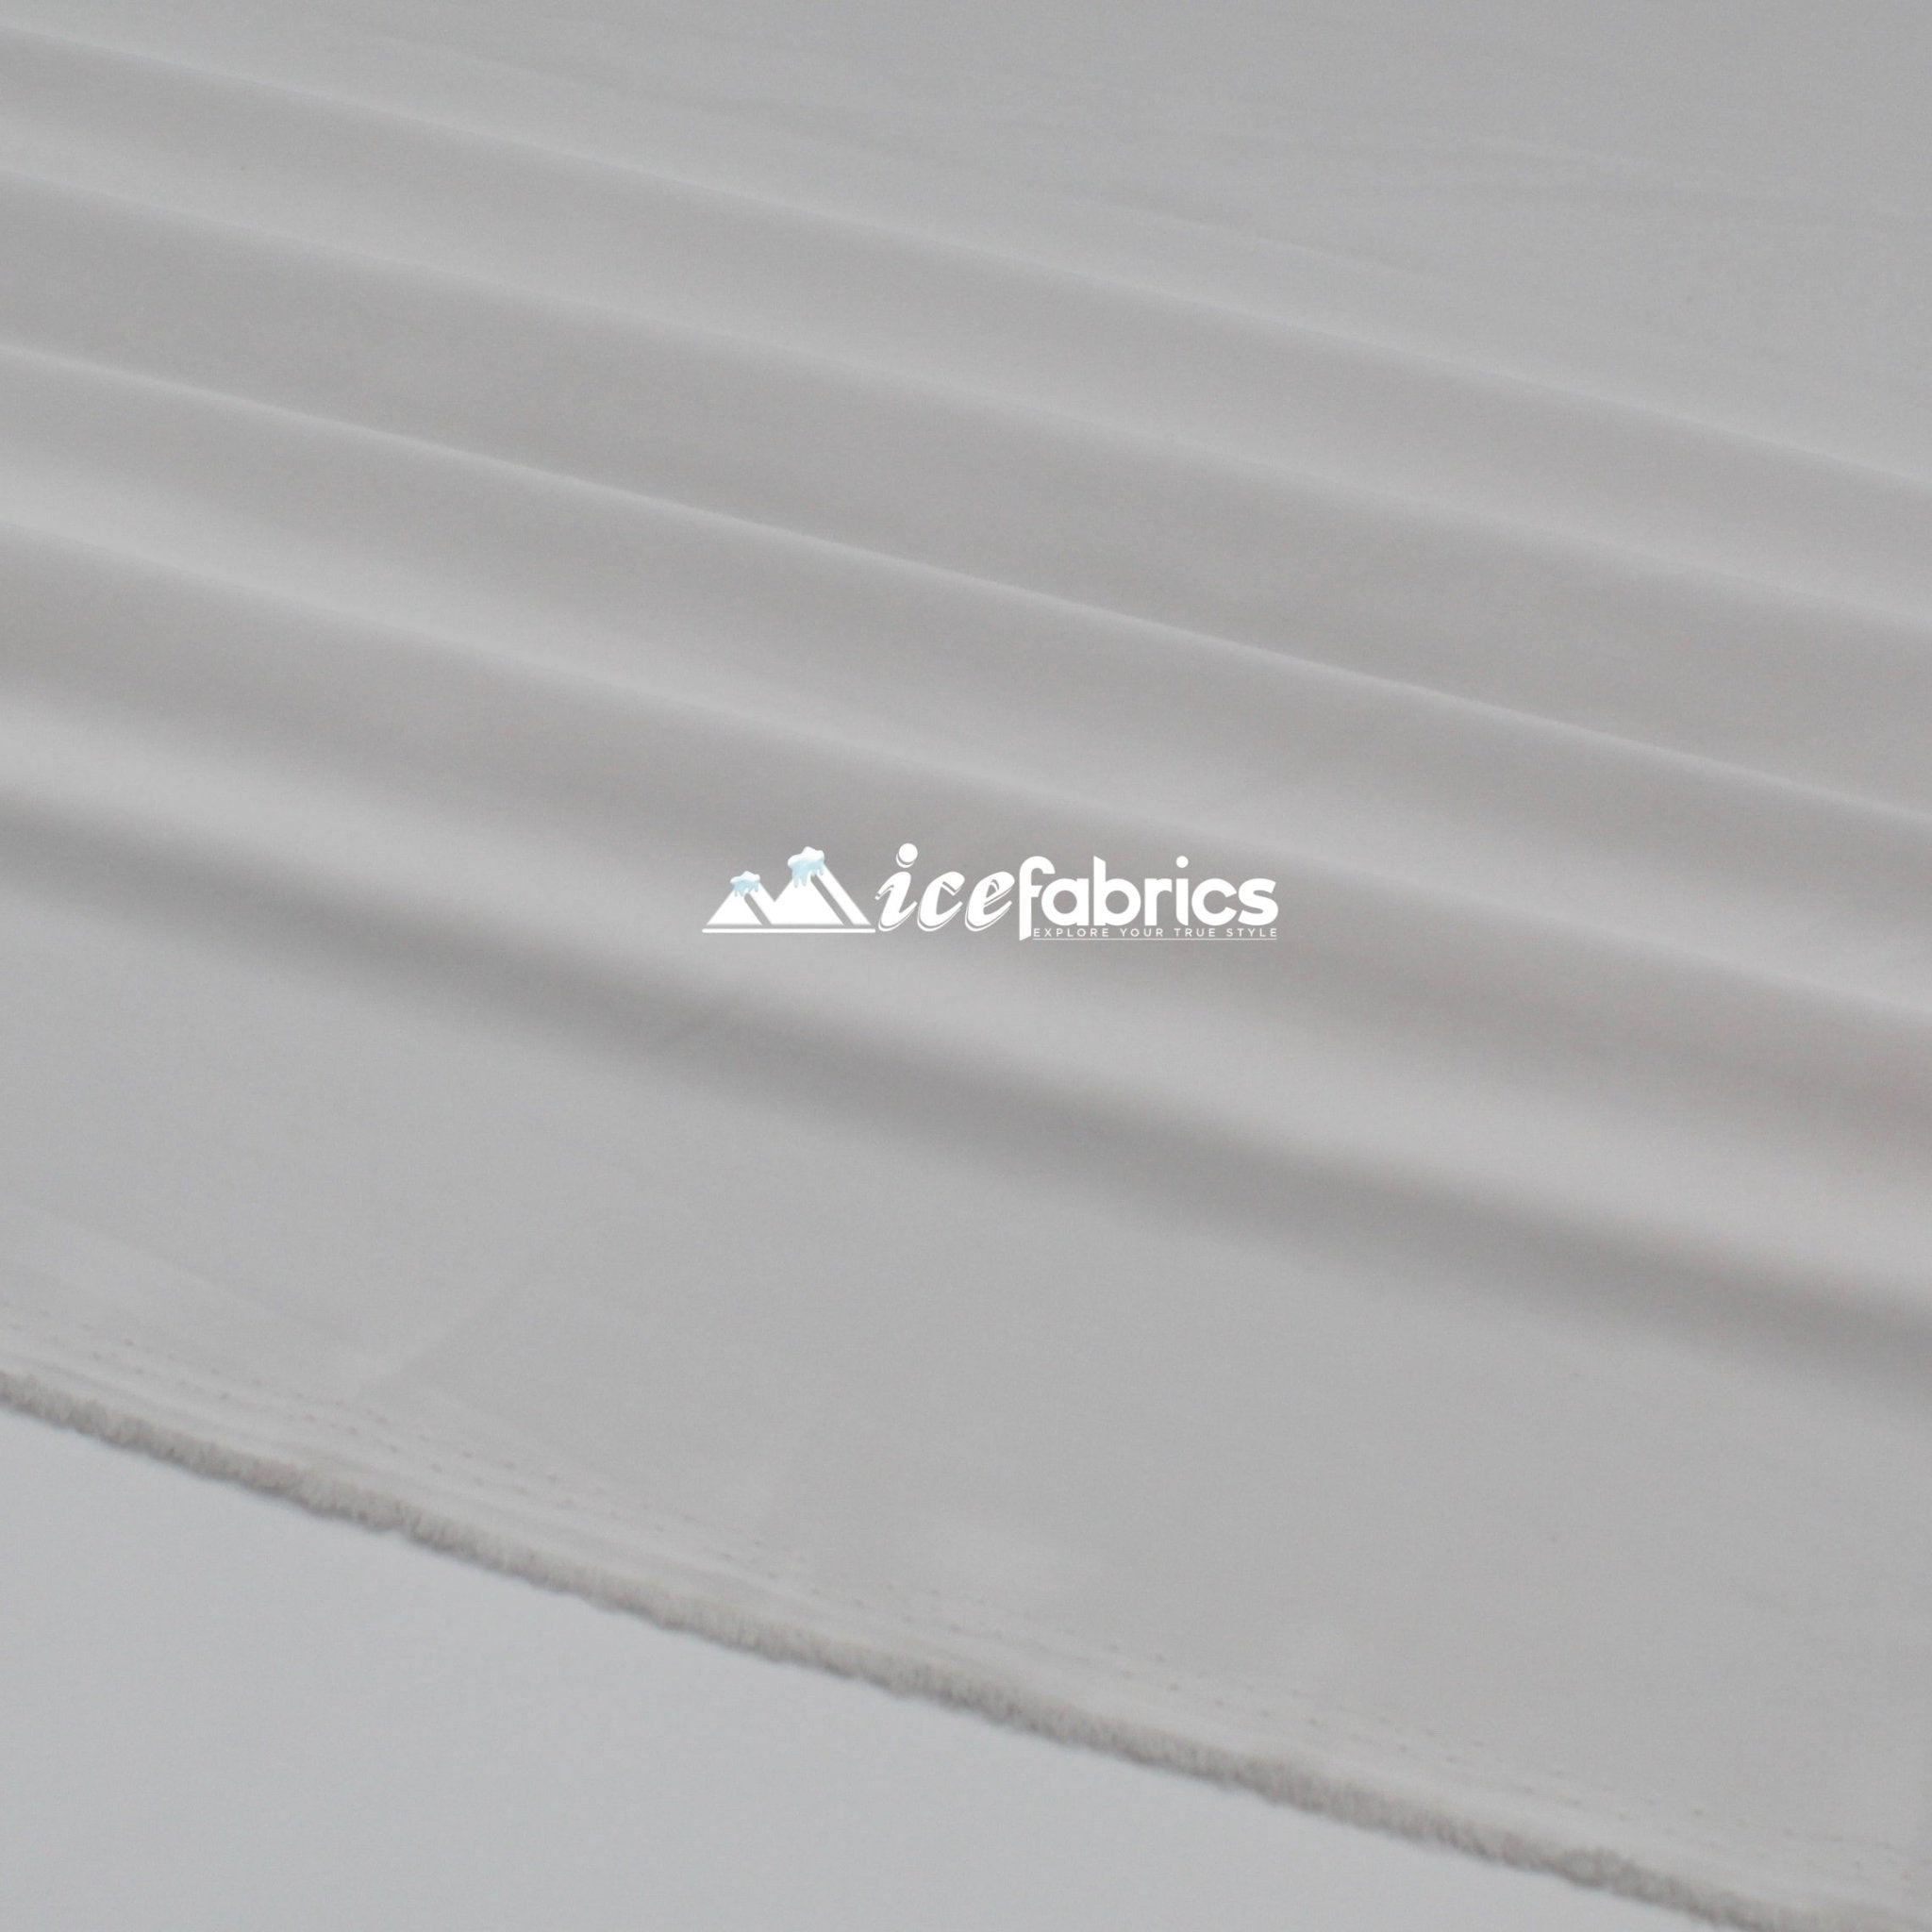 Silk Fabric Stretch Chiffon Fabric/ Spandex Fabric/ Off WhiteChiffon FabricICE FABRICSICE FABRICSOff WhitePer YardSilk Fabric Stretch Chiffon Fabric/ Spandex Fabric/ Off White ICE FABRICS